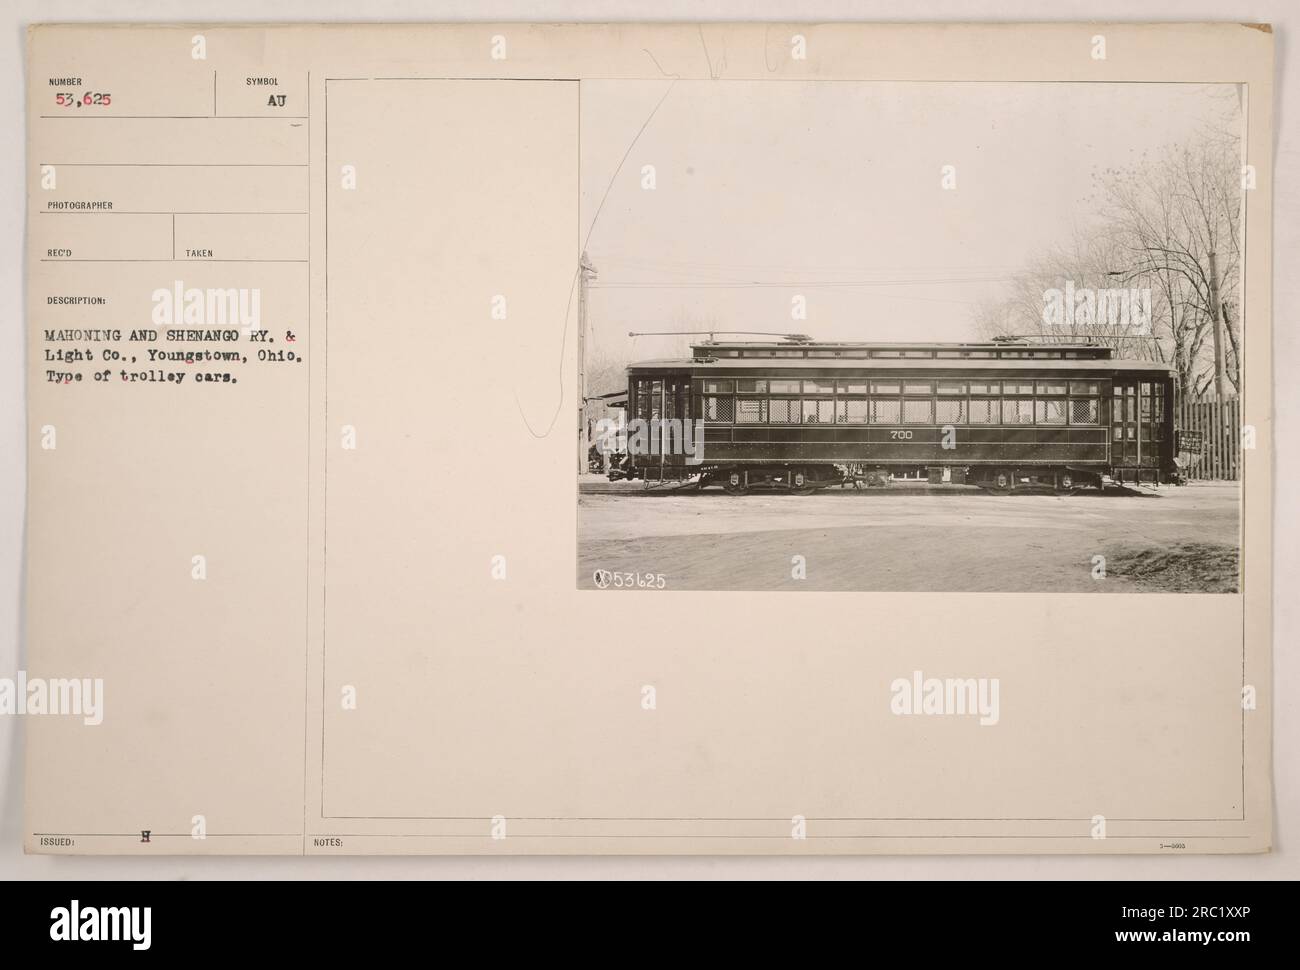 Das Bild zeigt Trolley-Autos der Mahoning and Shenango Railway & Light Co. In Youngstown, Ohio während des 1. Weltkriegs. Der Trolleywagen in der Abbildung ist mit 53.625 nummeriert. Dieses Foto wurde als Teil einer Serie von amerikanischen Militäraktionen während dieser Zeit aufgenommen. Stockfoto